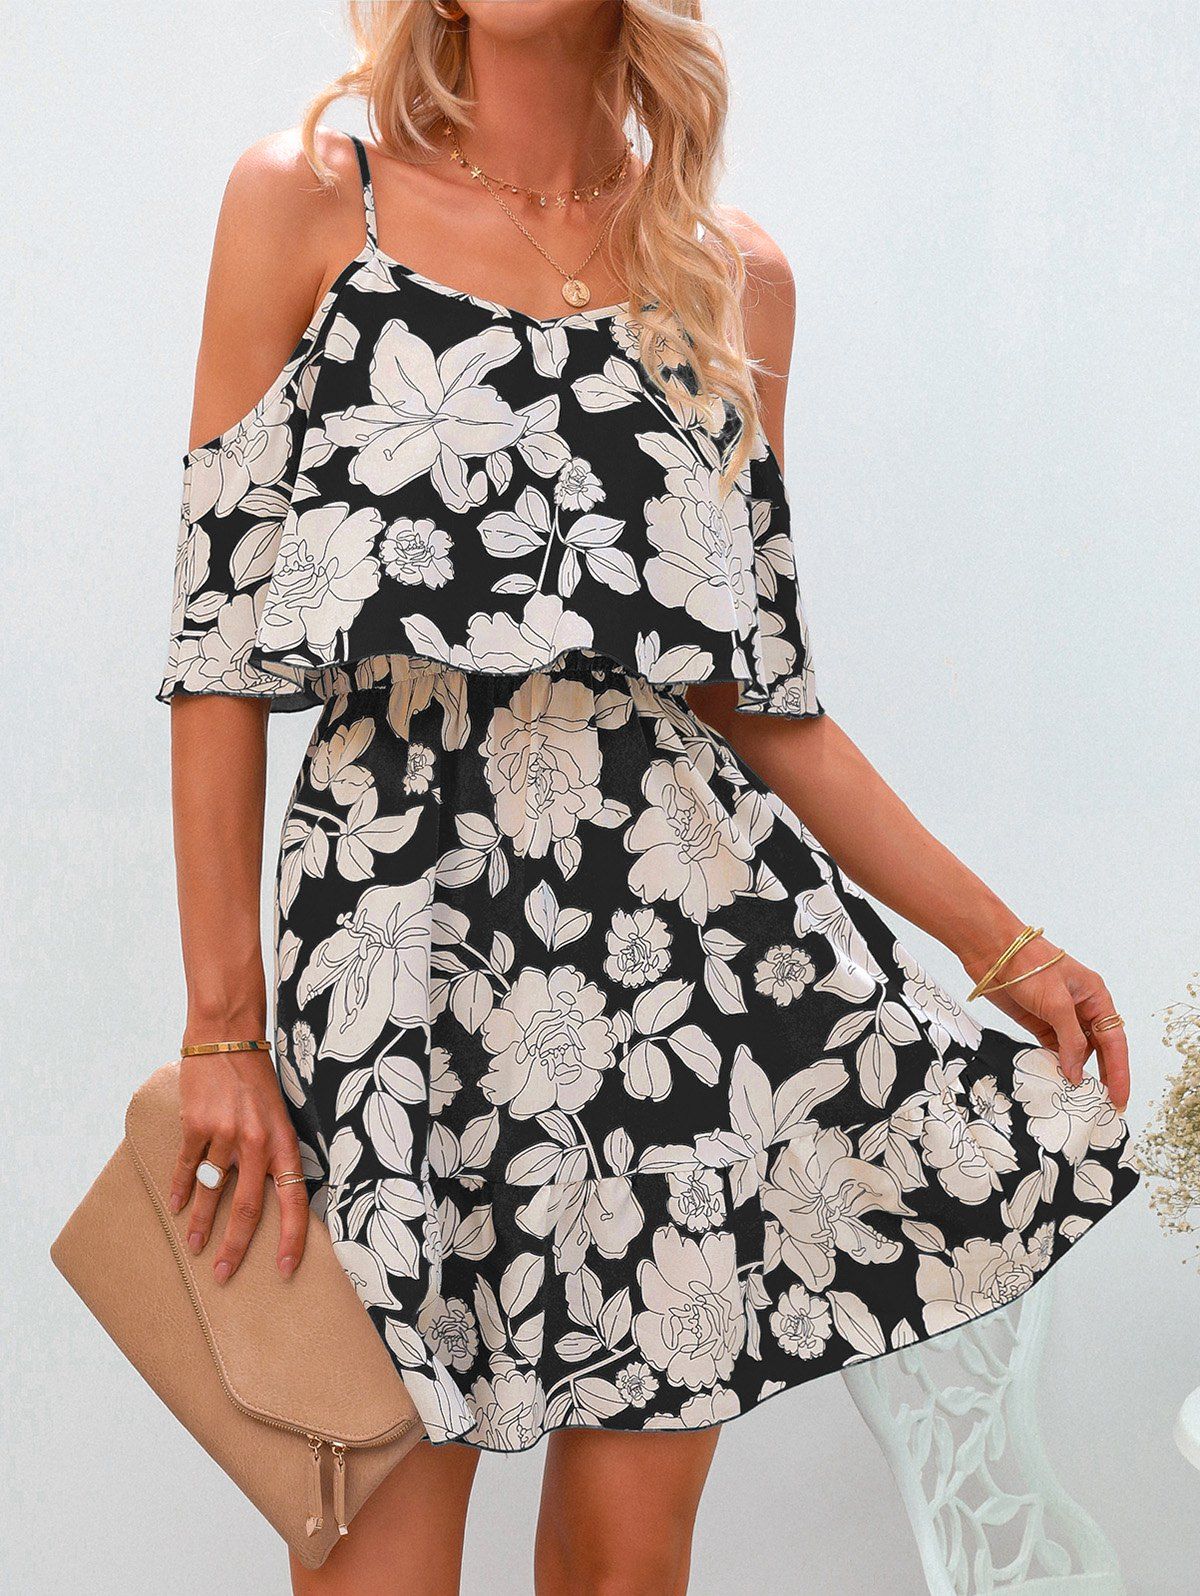 Casual Dress Floral Print Dress Flounce Sleeveless High Waist A Line Mini Summer Vacation Dress - BLACK M